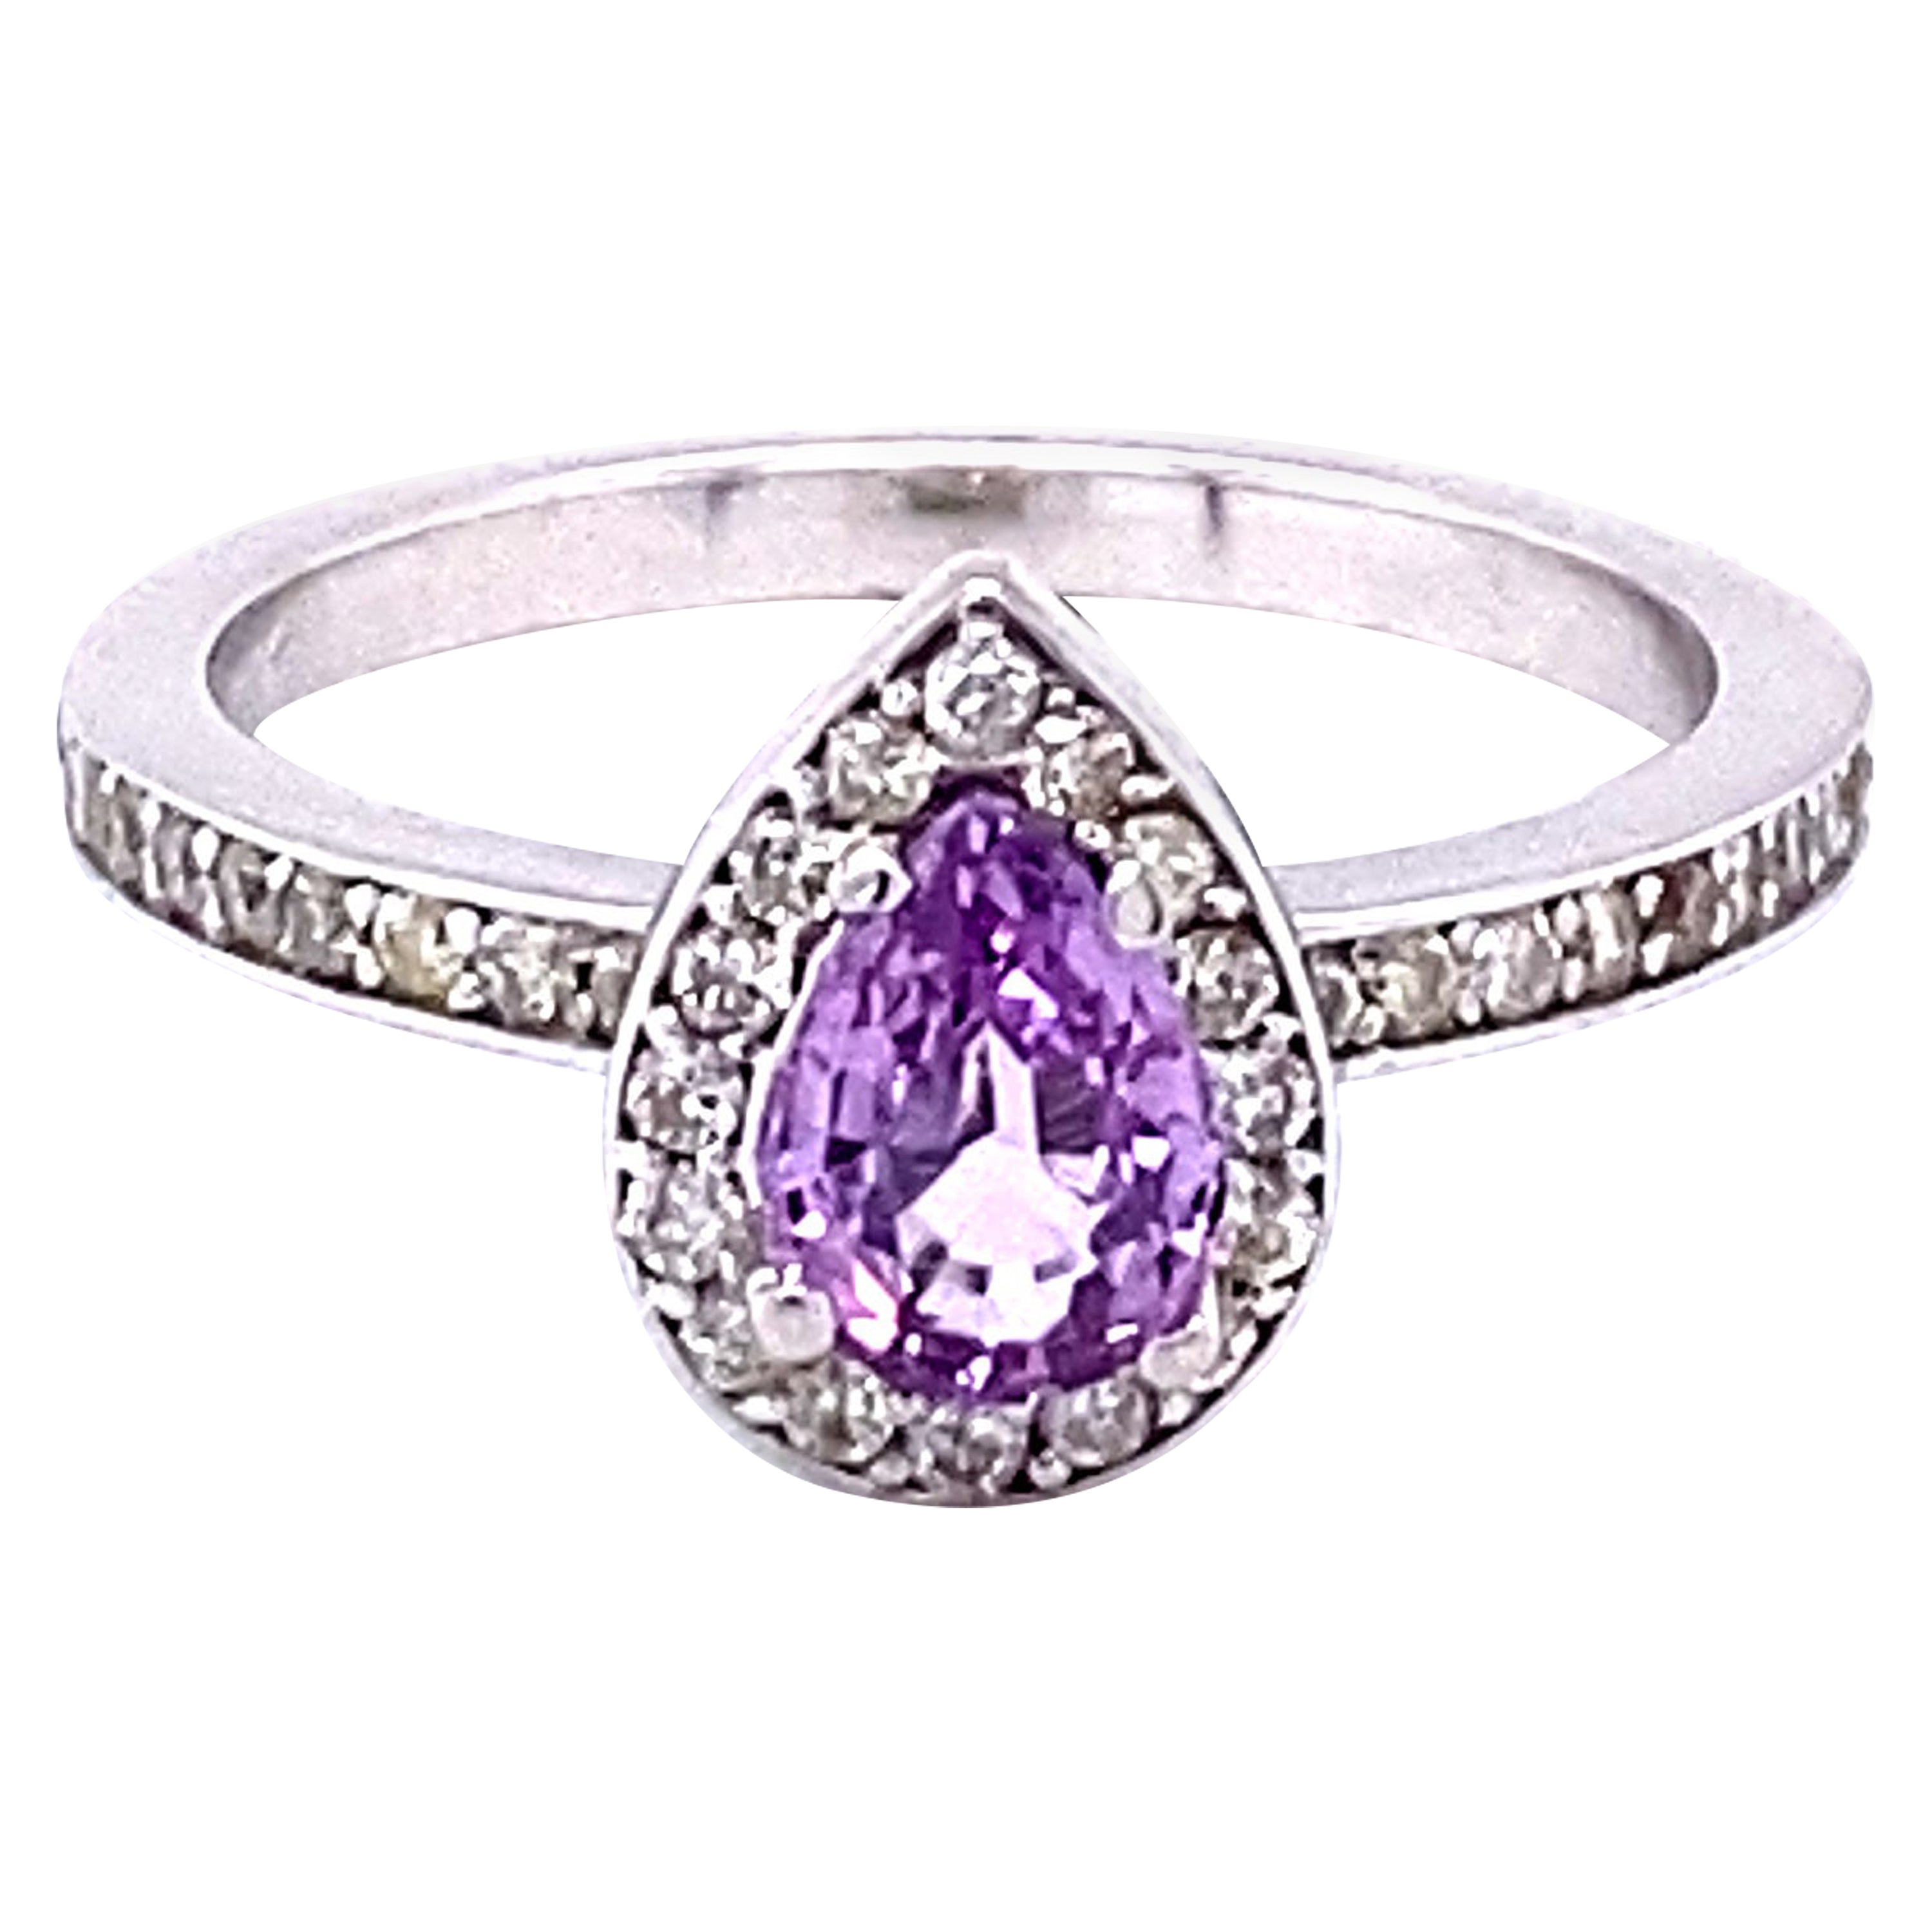 1.02 Carat Pink Sapphire Diamond 14 Karat White Gold Engagement Ring